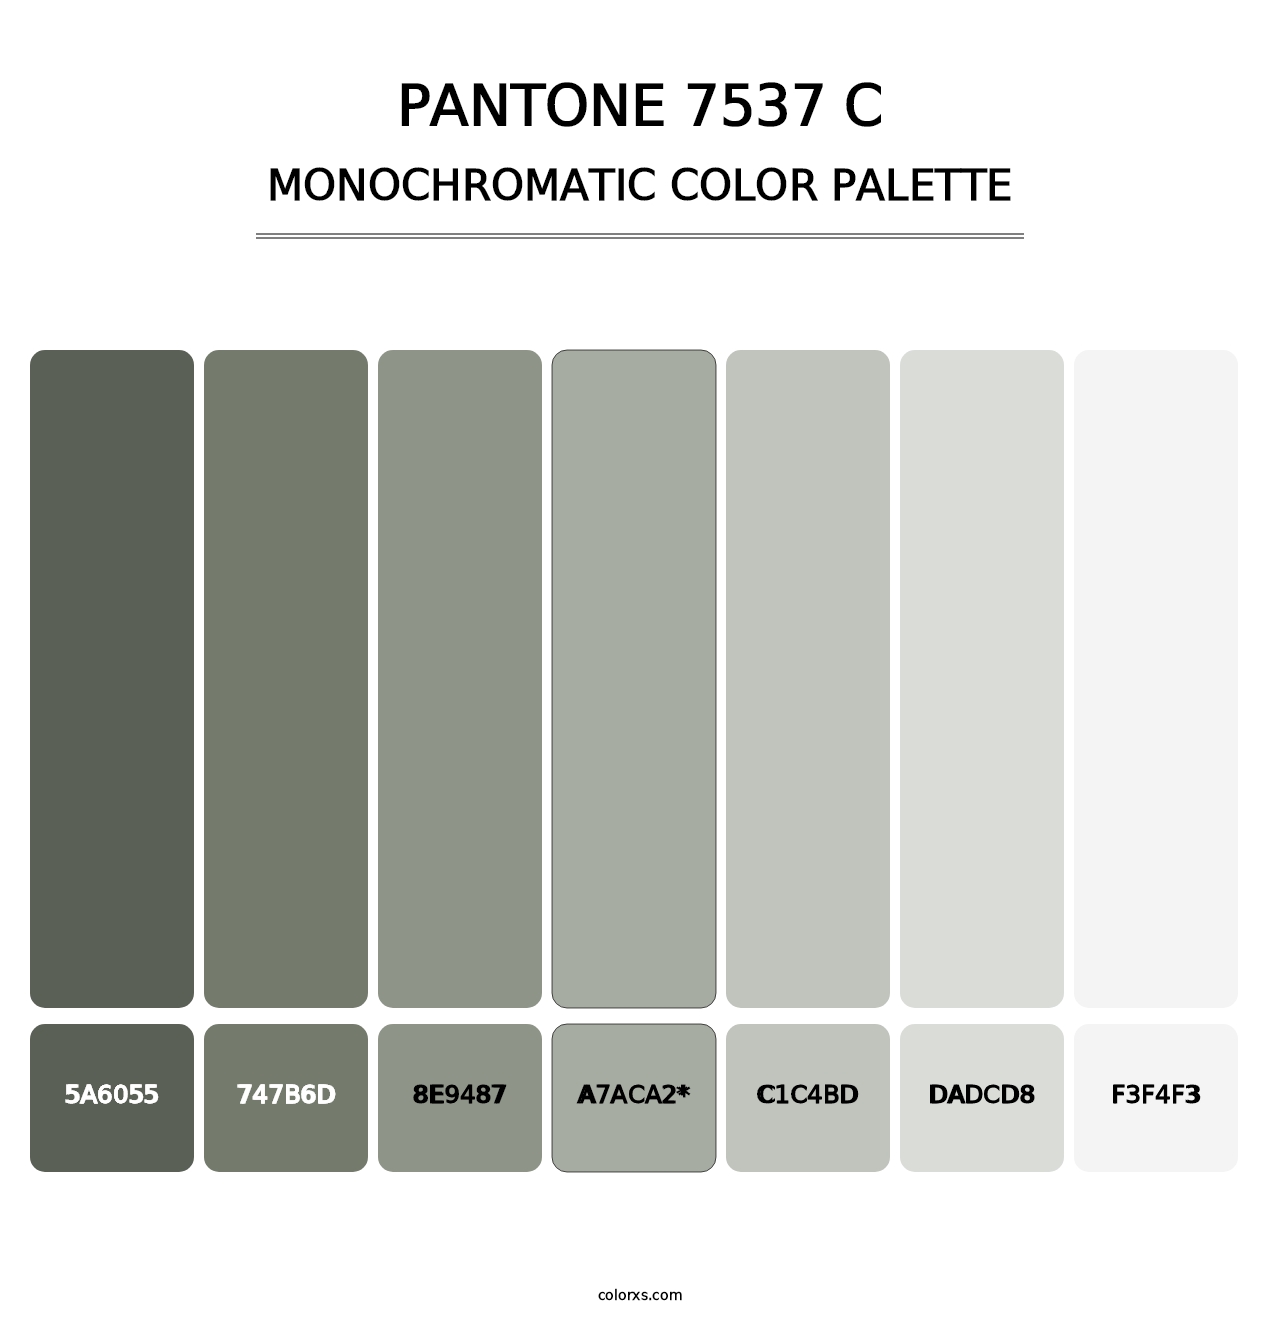 PANTONE 7537 C - Monochromatic Color Palette